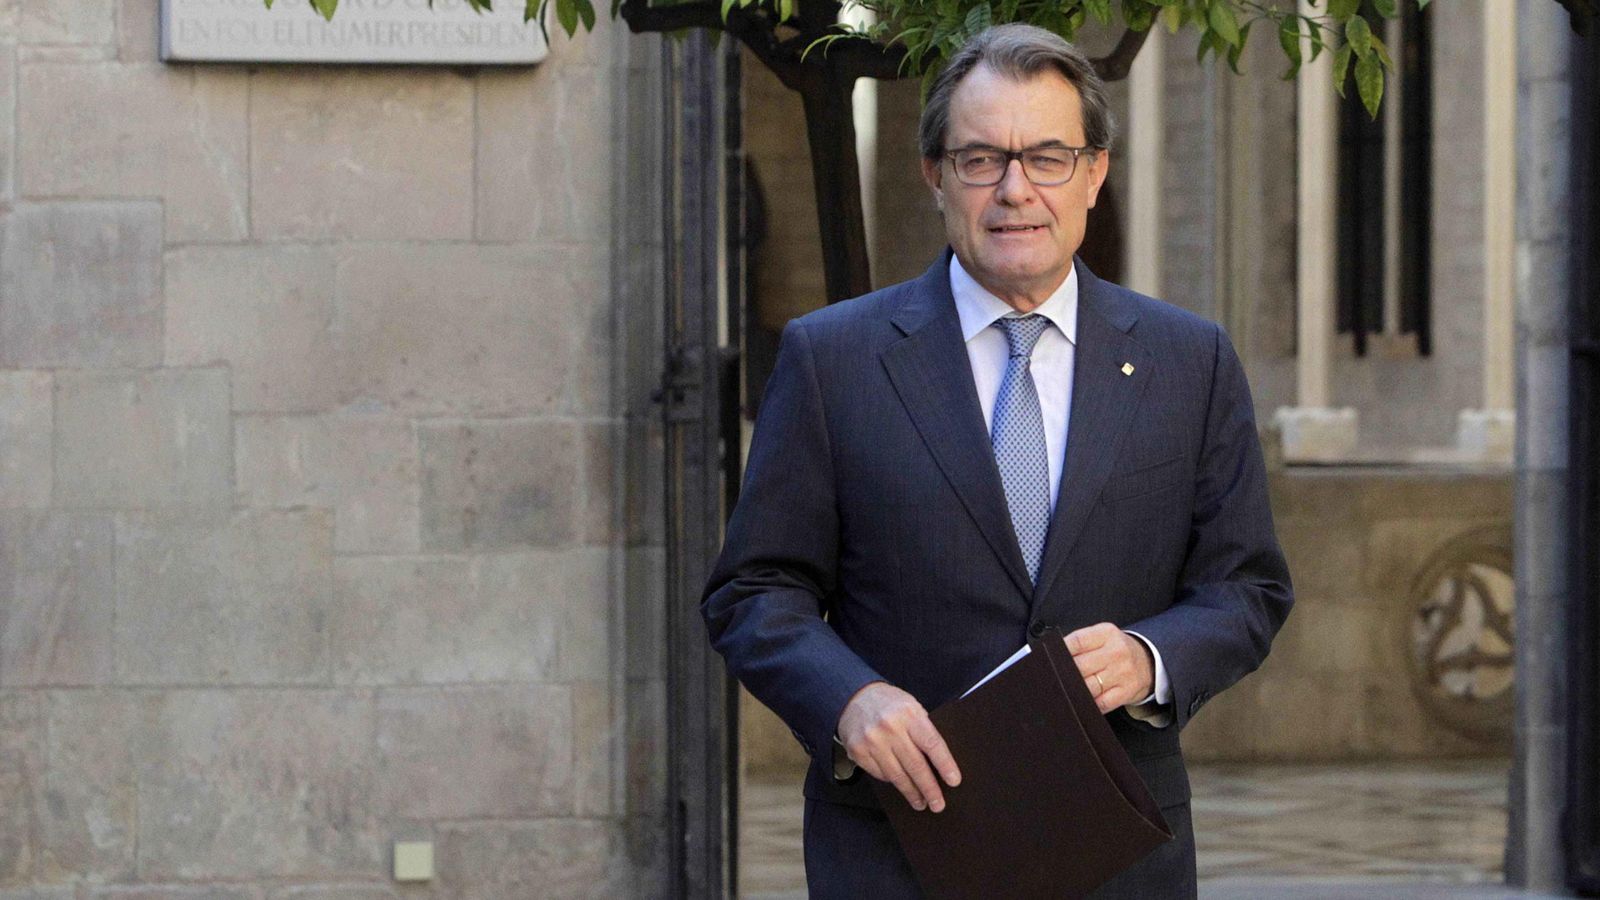 Foto: El presidente de la Generalitat en funciones, Artur Mas, a su llegada a una reunión semanal del gobierno catalán. (Efe)